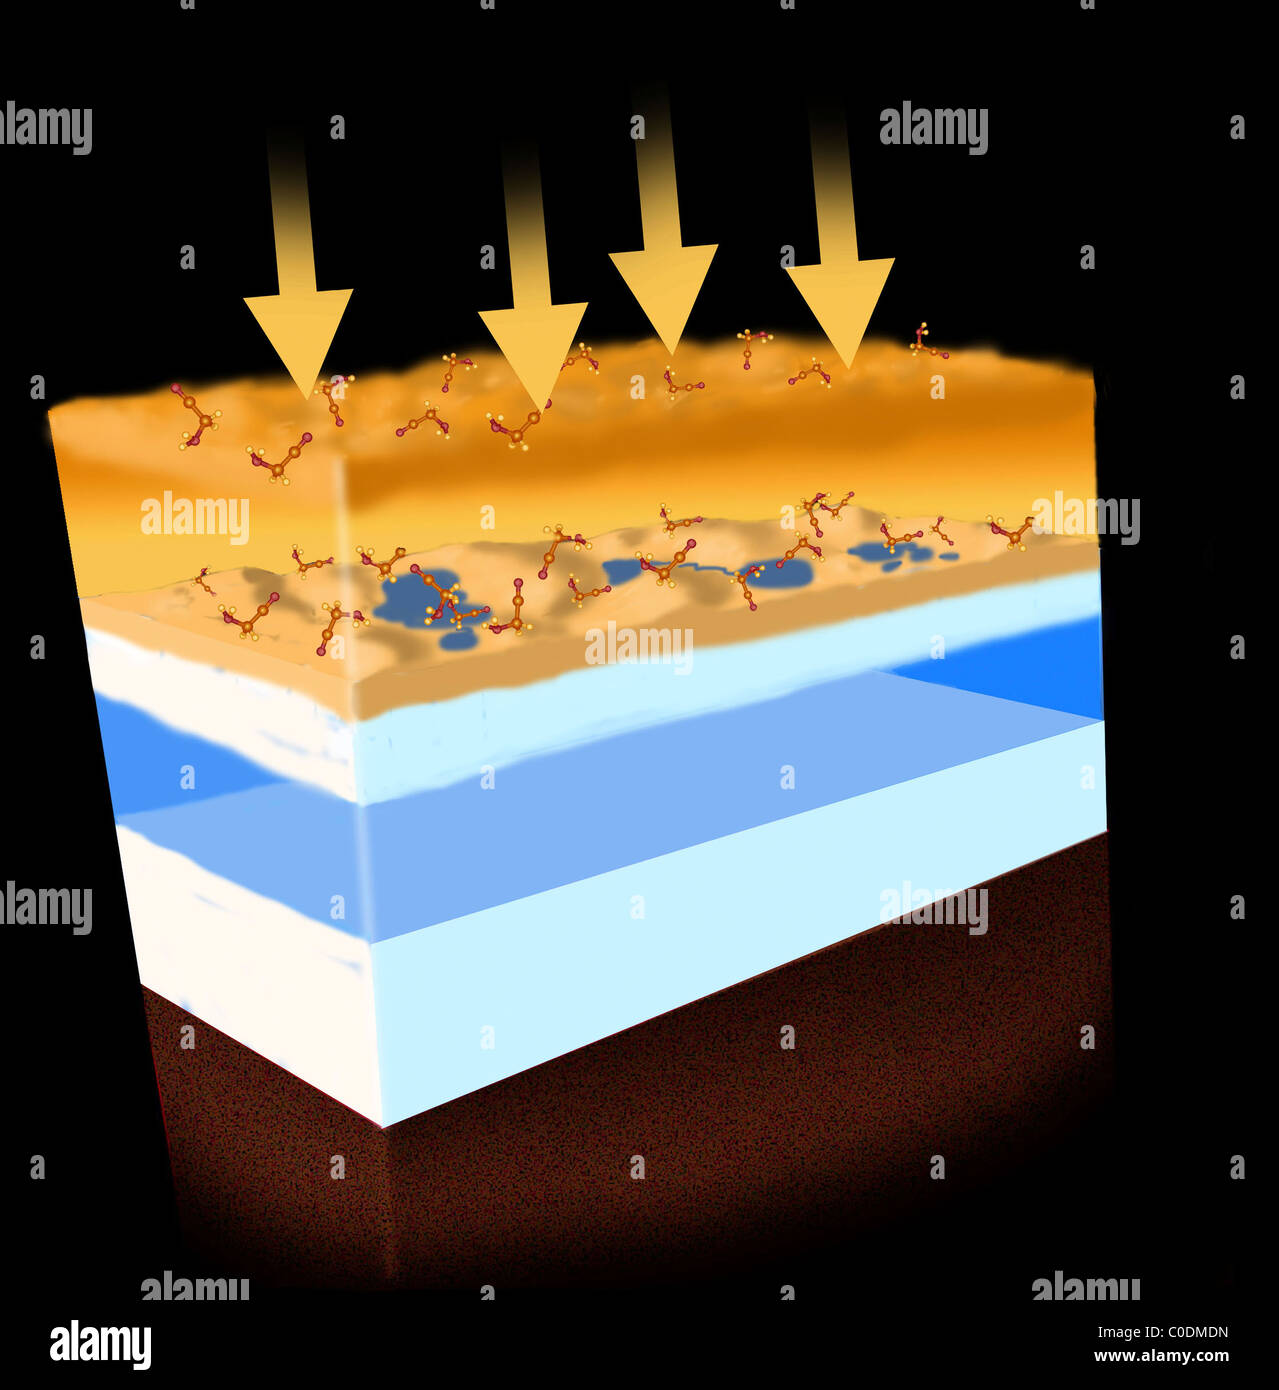 Un schéma montrant comment l'énergie sous forme de rayonnement solaire crée des molécules organiques dans l'atmosphère de Titan. Banque D'Images